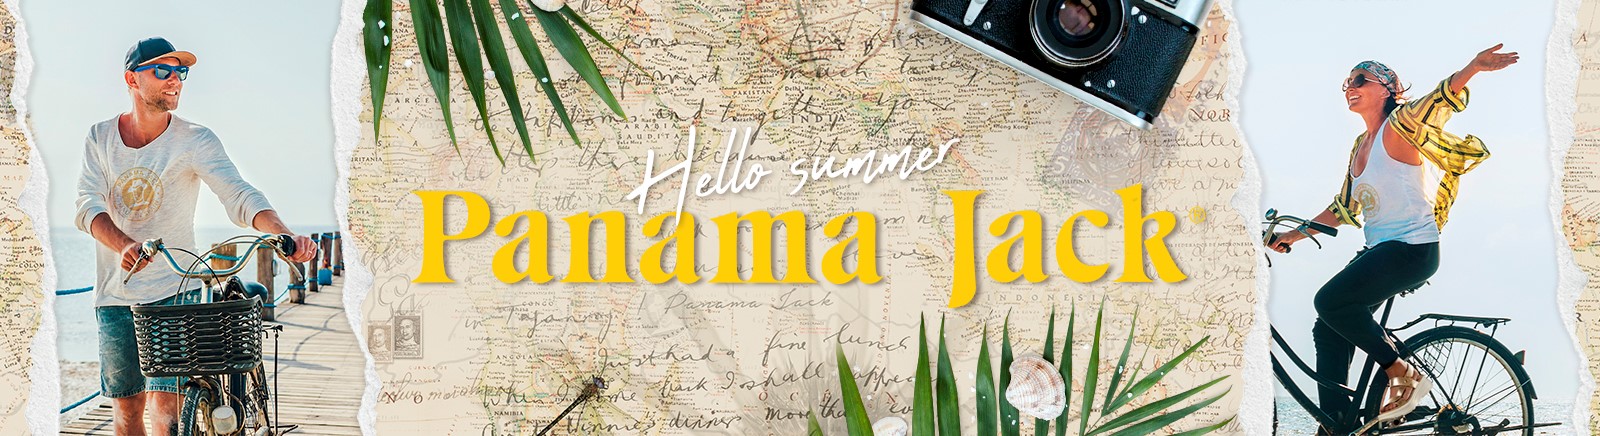 Panama Jack Damenschuhe online entdecken im Juppen Schuhe Shop